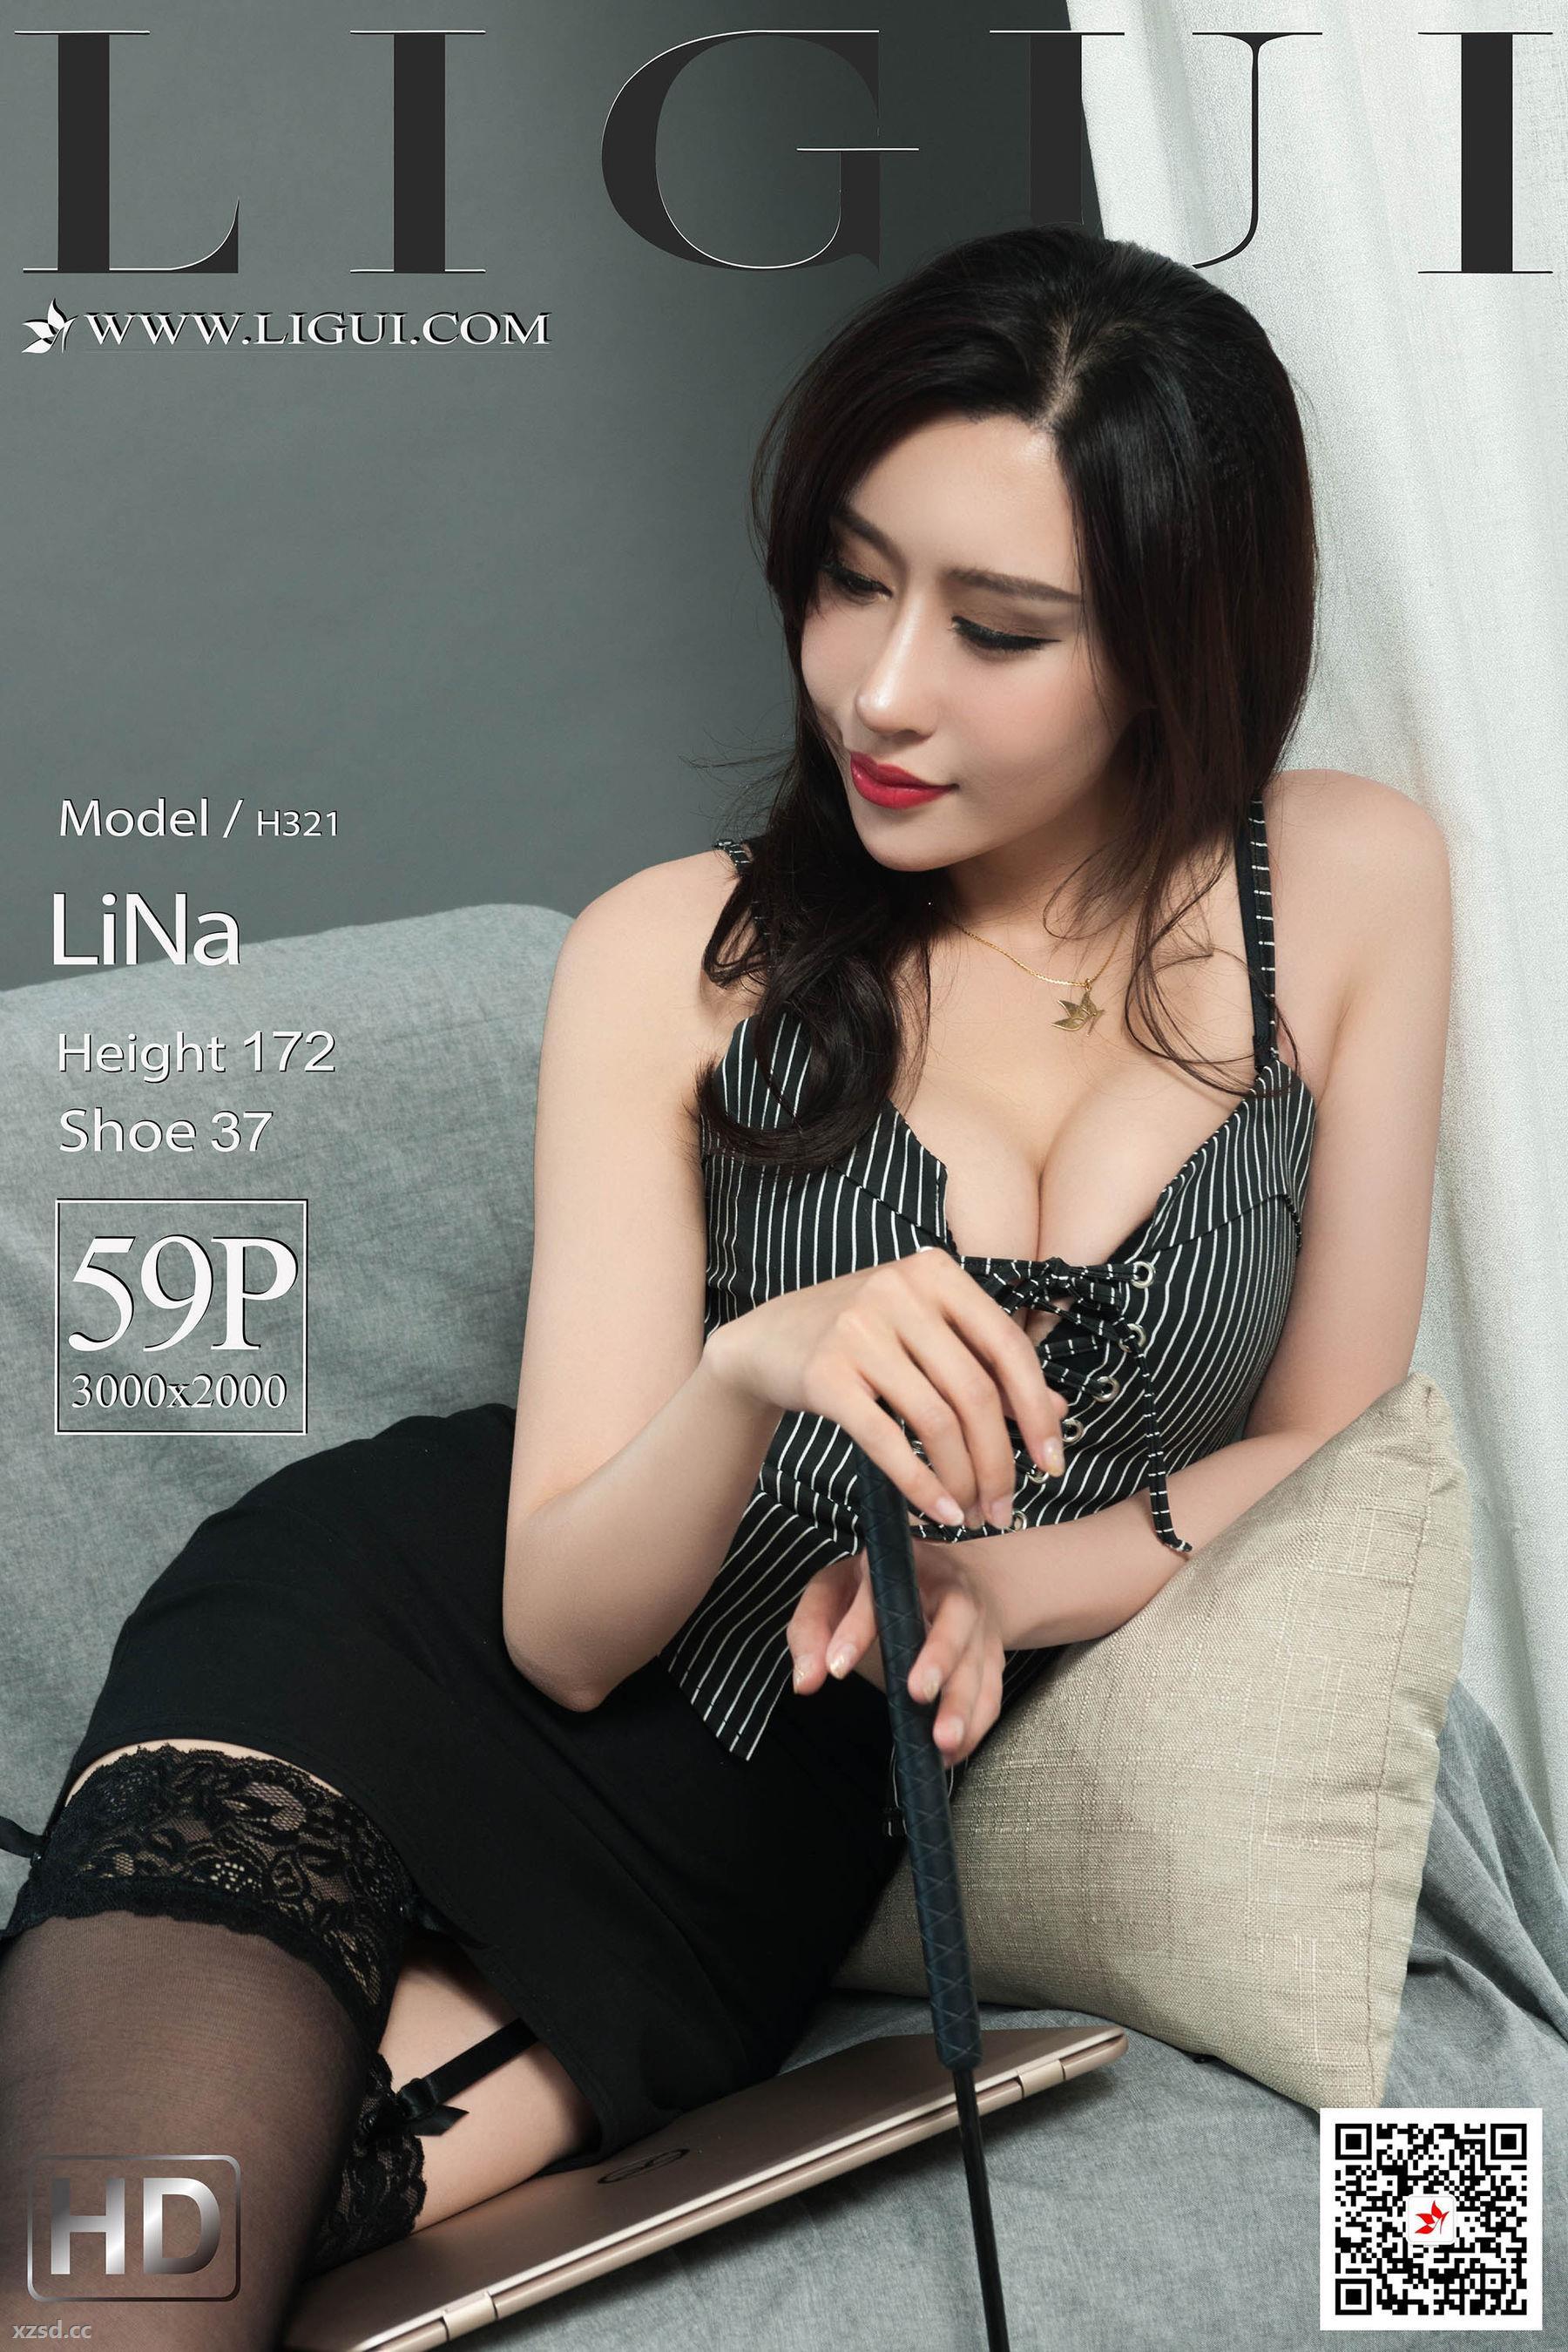 [丽柜Ligui] 网络丽人 Model LiNa